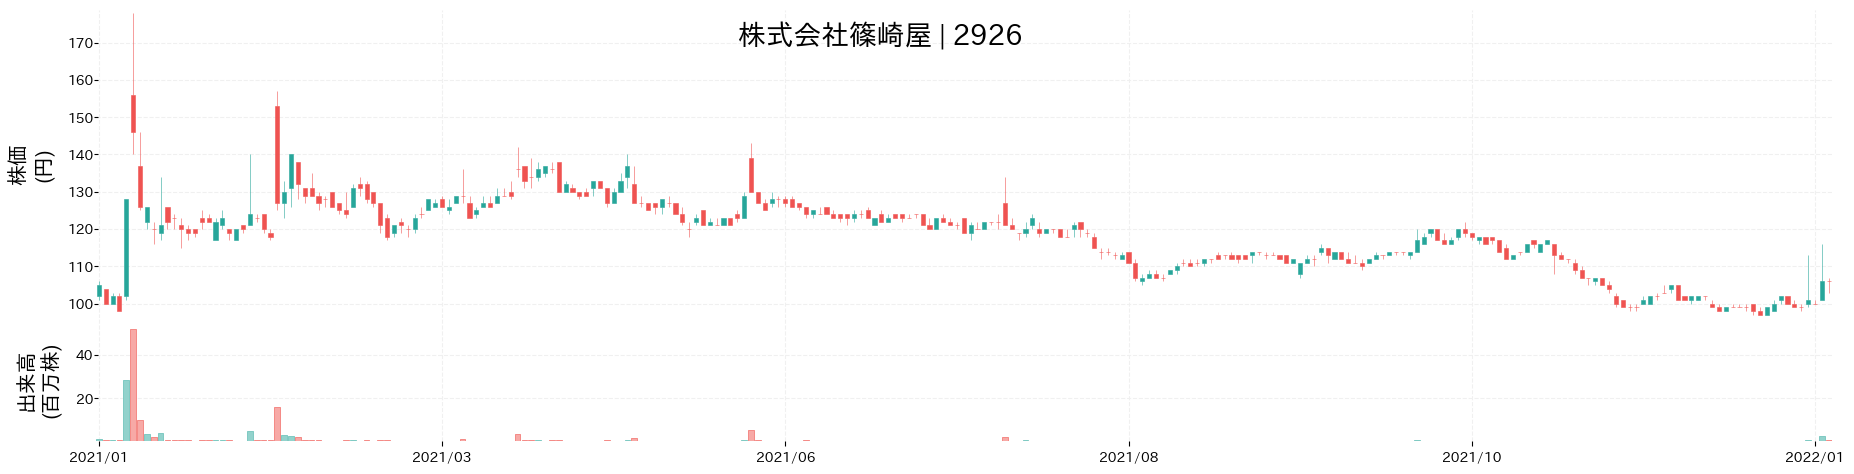 篠崎屋の株価推移(2021)